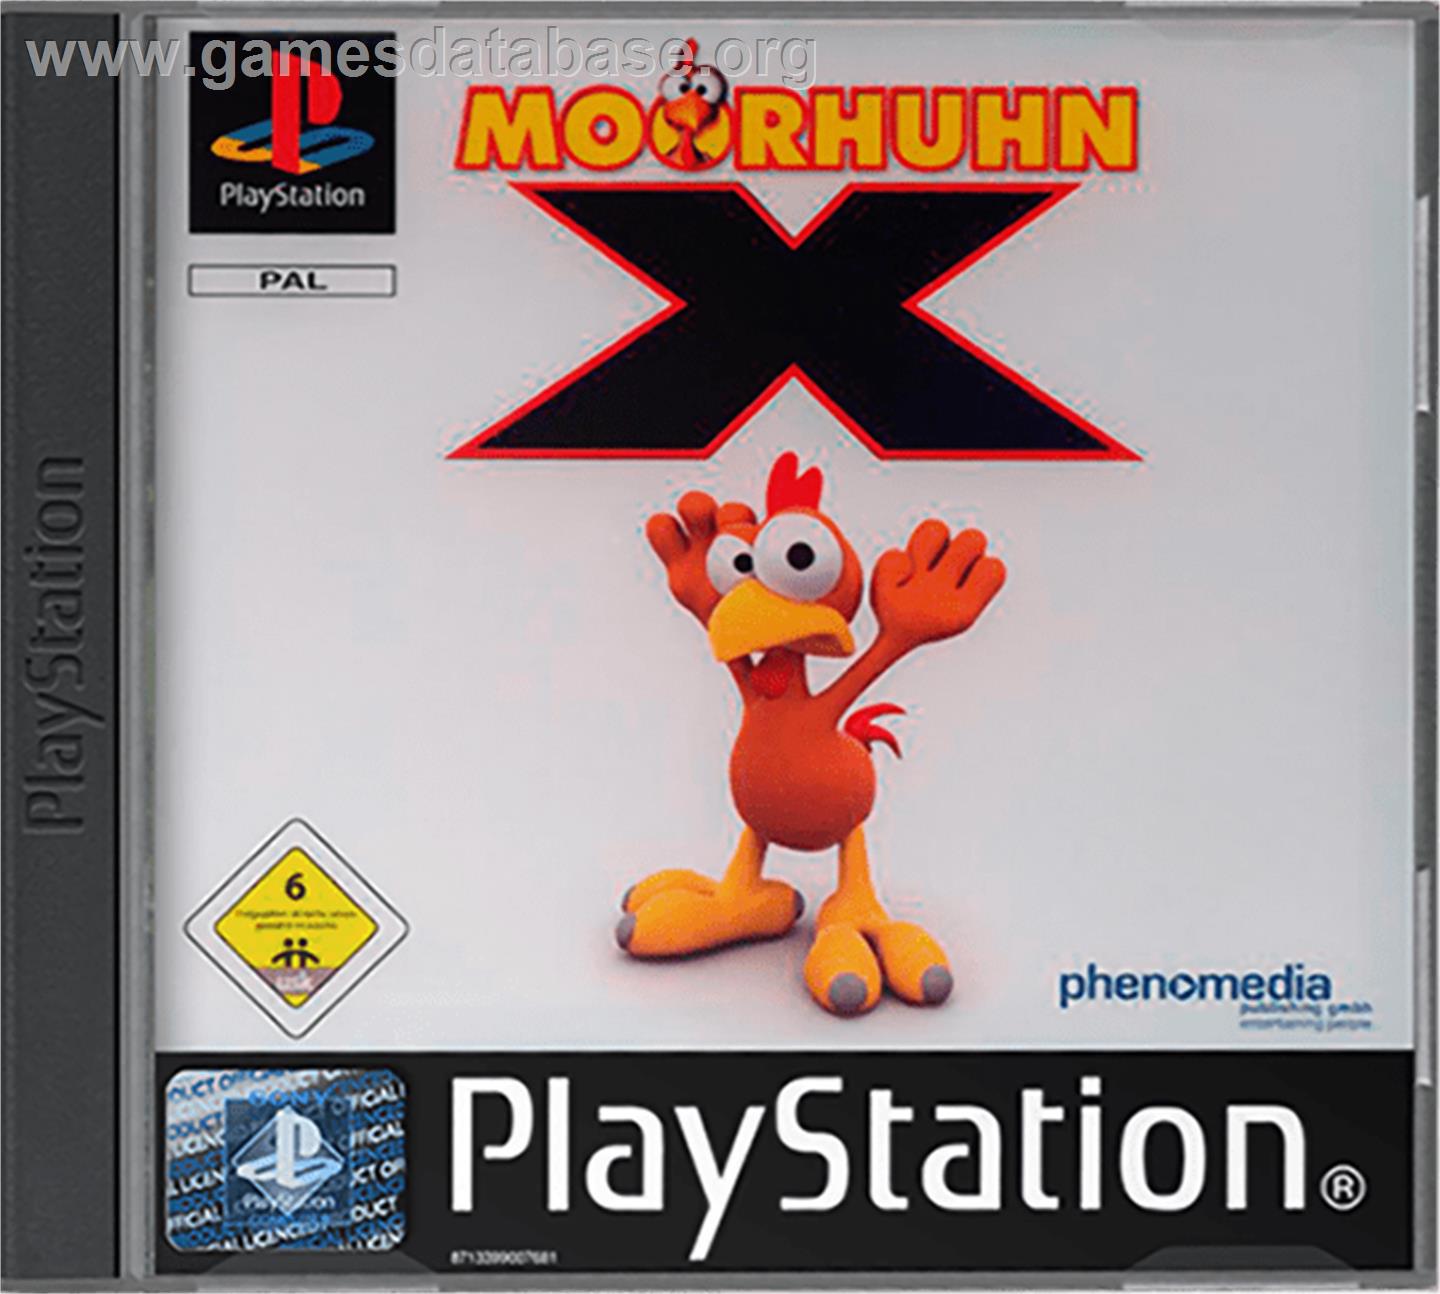 Moorhuhn X - Sony Playstation - Artwork - Box